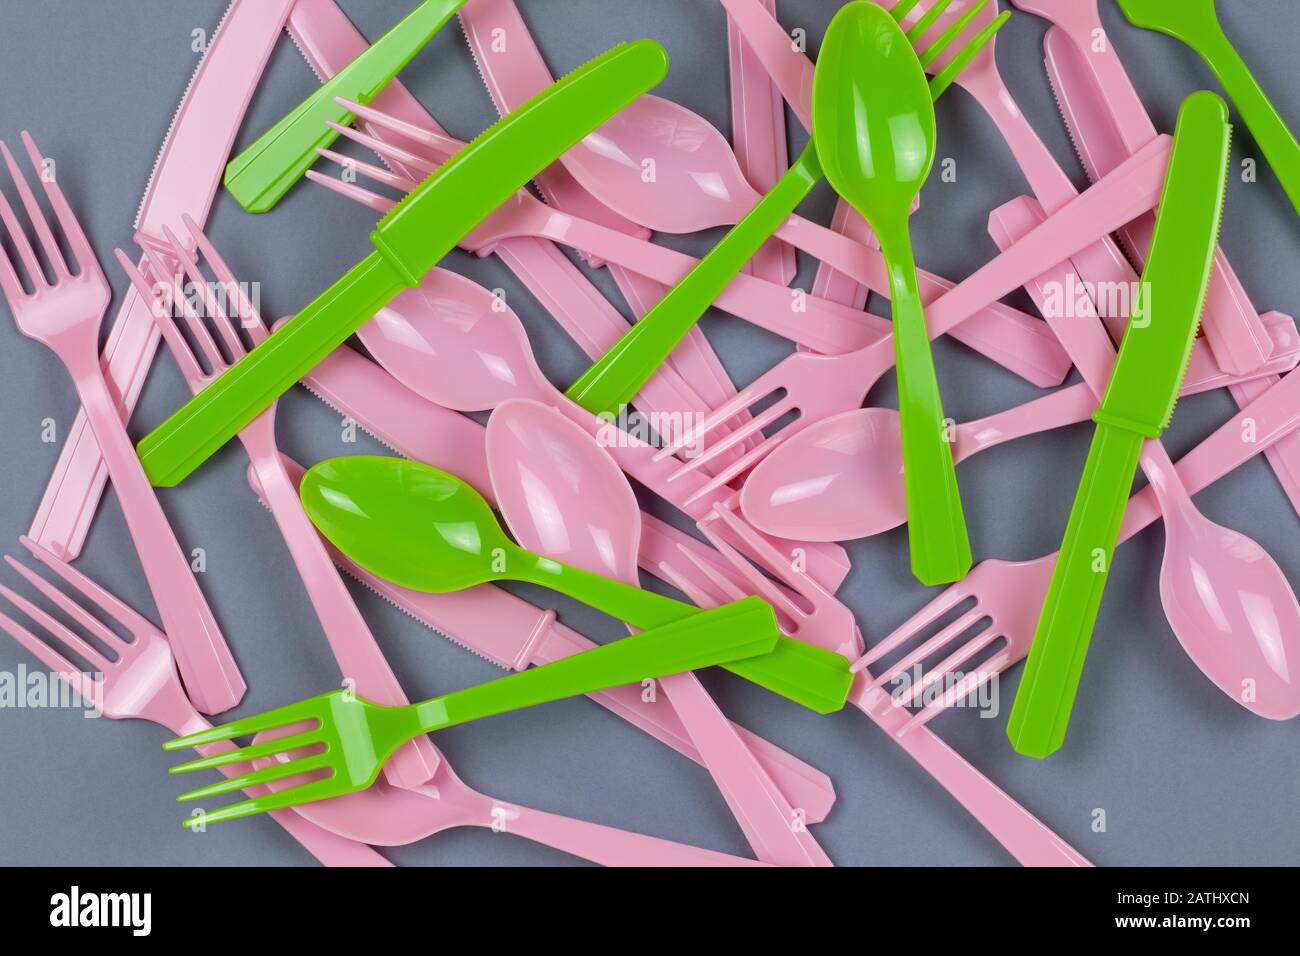 Sfondo da biforchette, cucchiai, coltelli riciclabili rosa e verde, realizzati con amido di mais su carta grigia. Eco, zero rifiuti, alternativa alla plastica Foto Stock